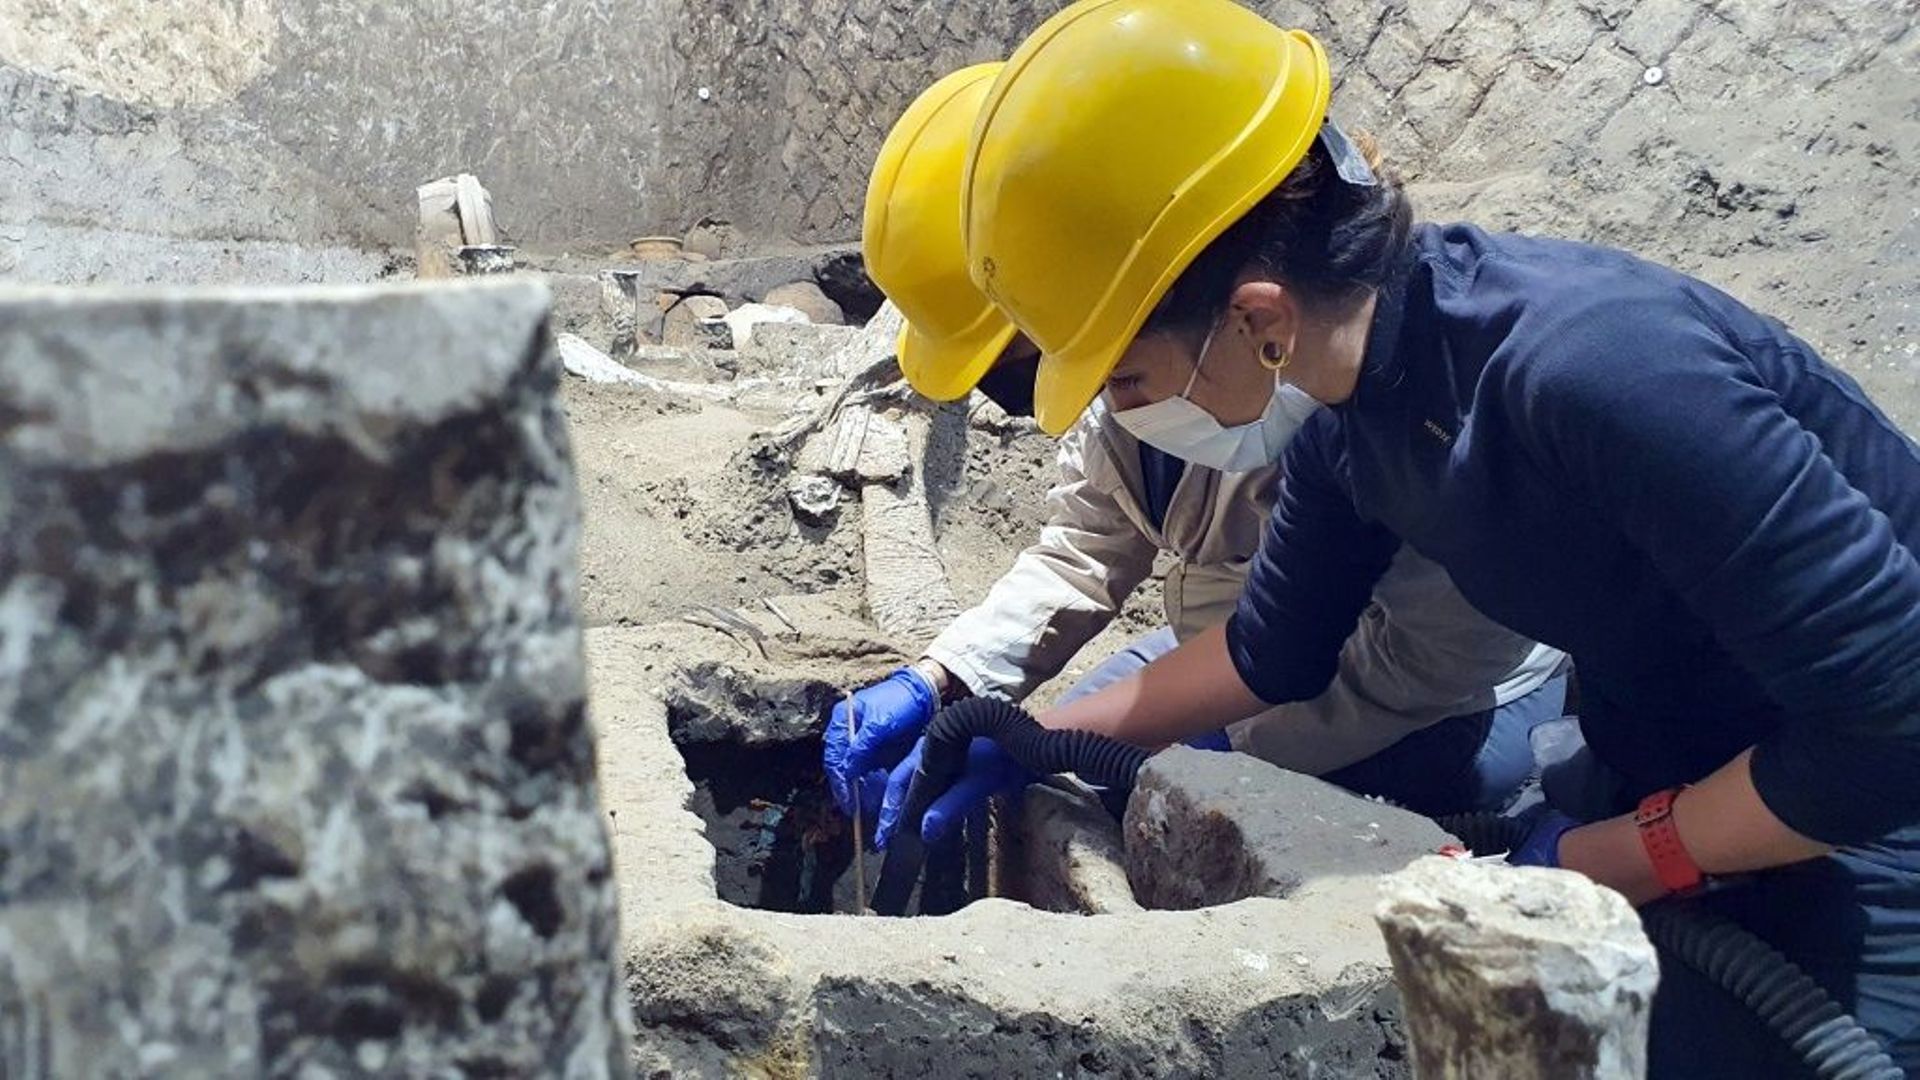 Photo remise le 6 novembre 2021 par le parc archéologique de Pompéi et montrant des archéologues sur les fouilles de la "chambre d'esclaves"